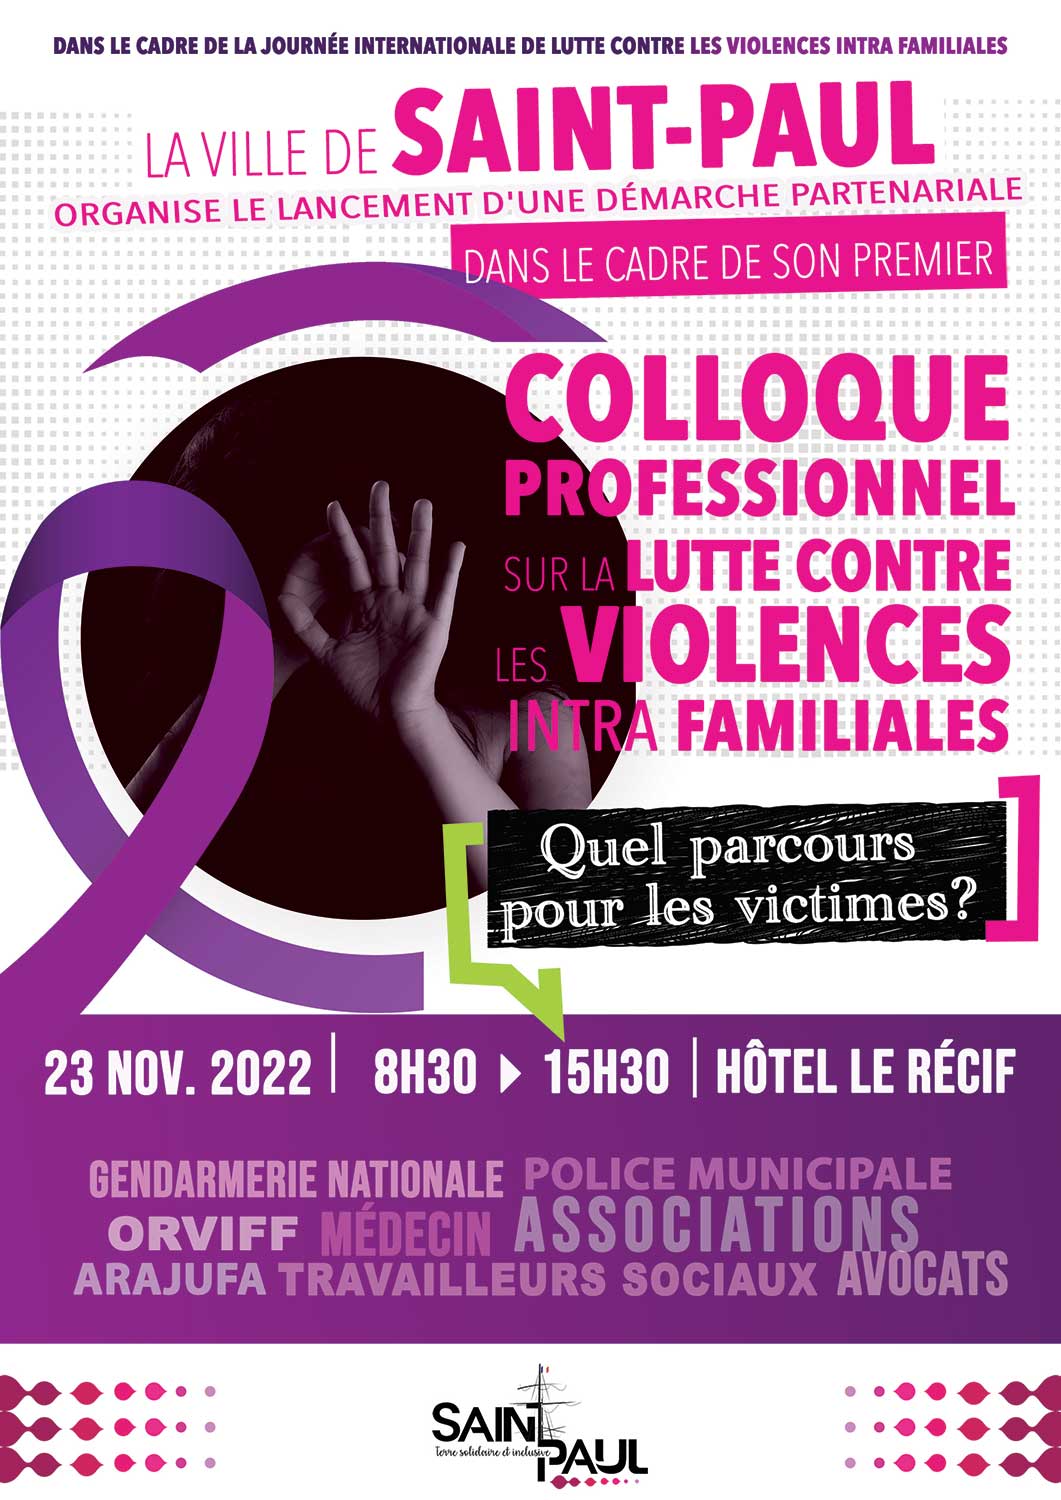 Le premier colloque professionnel sur la lutte contre les violences intrafamiliales